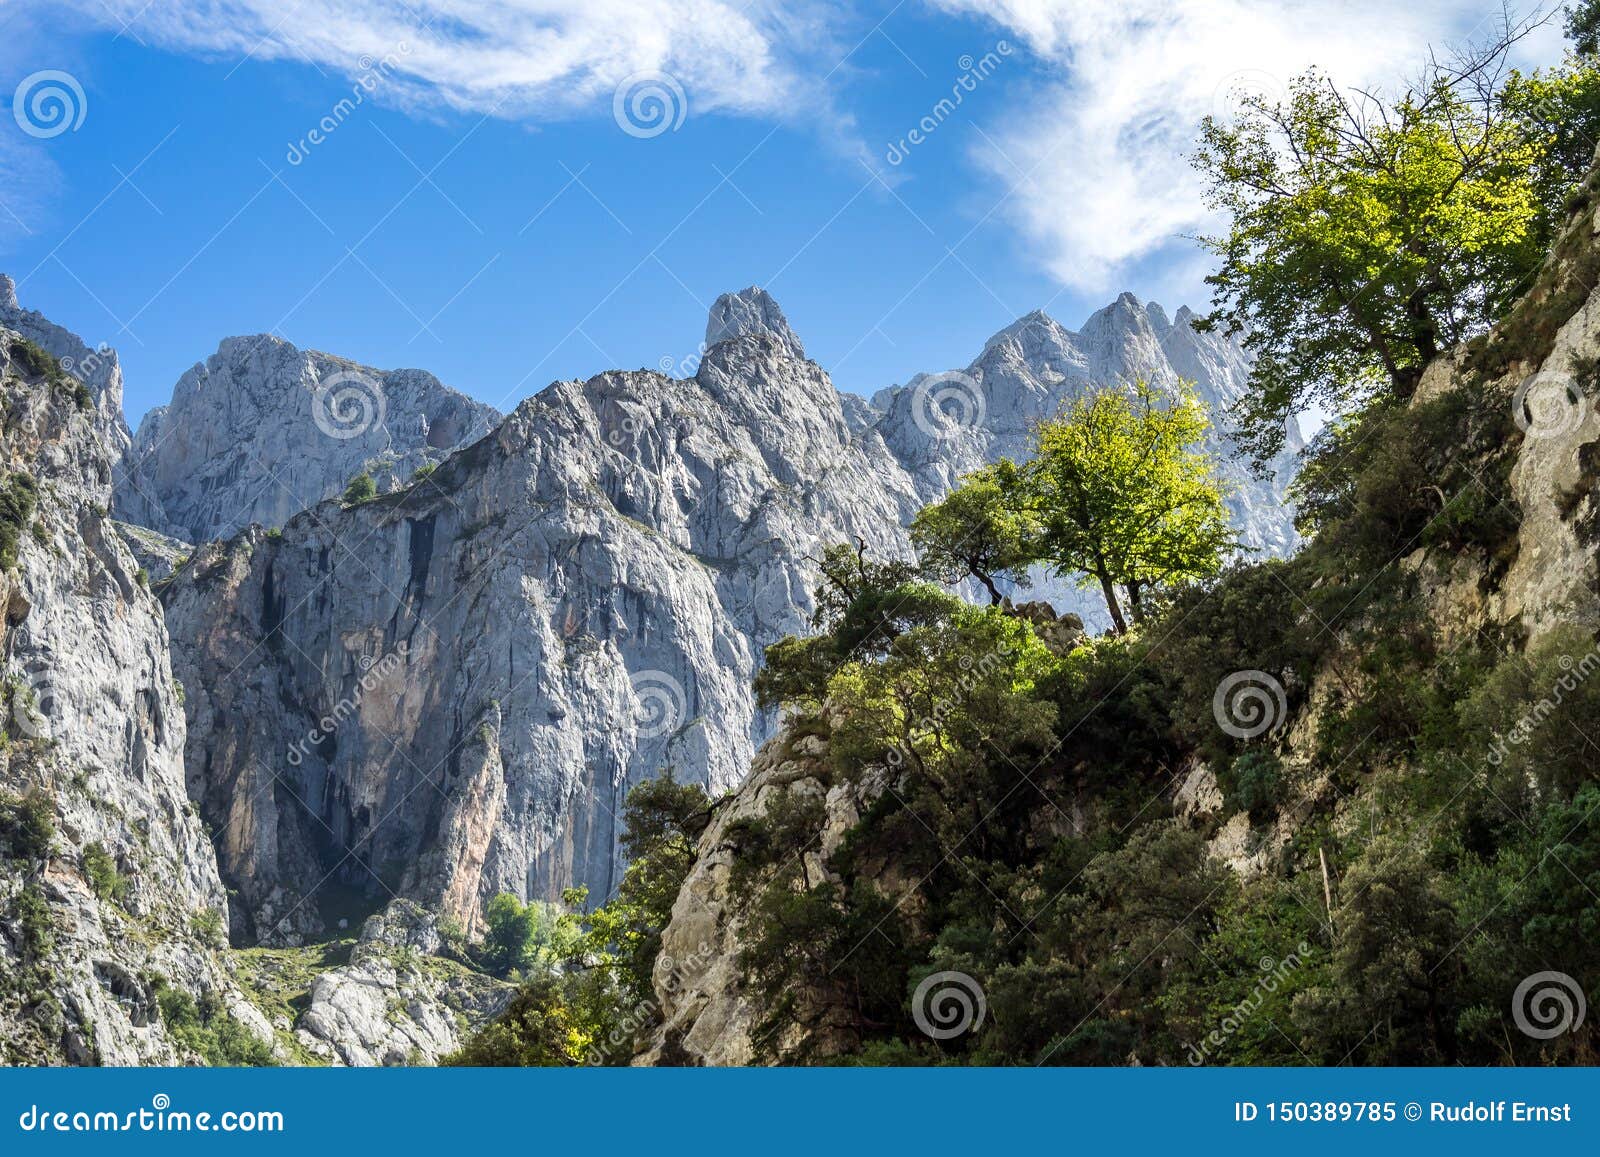 the cares trail, garganta del cares, in the picos de europa mountains, spain